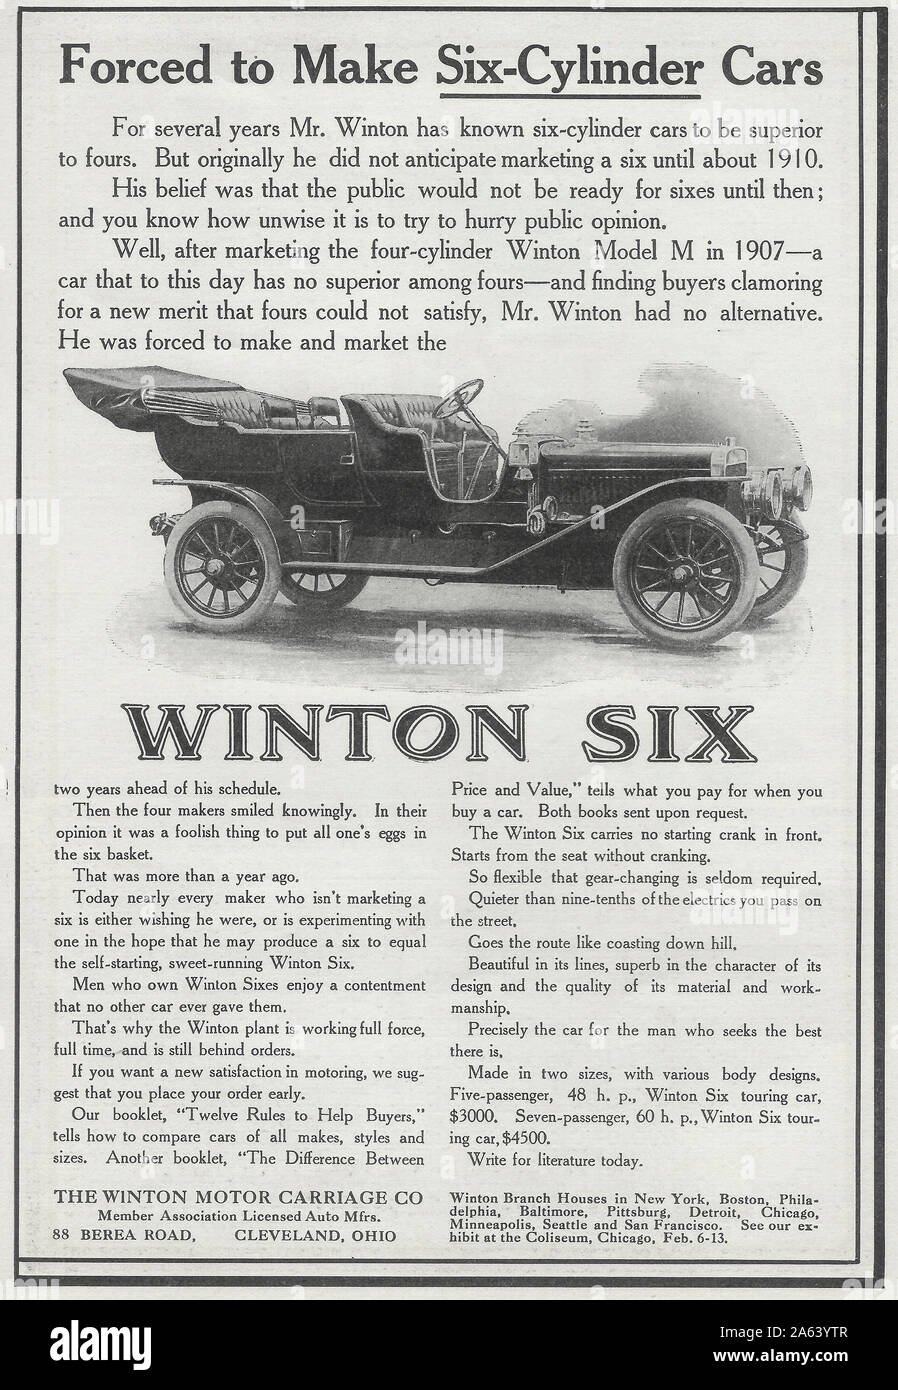 Publicité pour Winton Six - forcé de faire des voitures à six cylindres, vers 1909 Banque D'Images